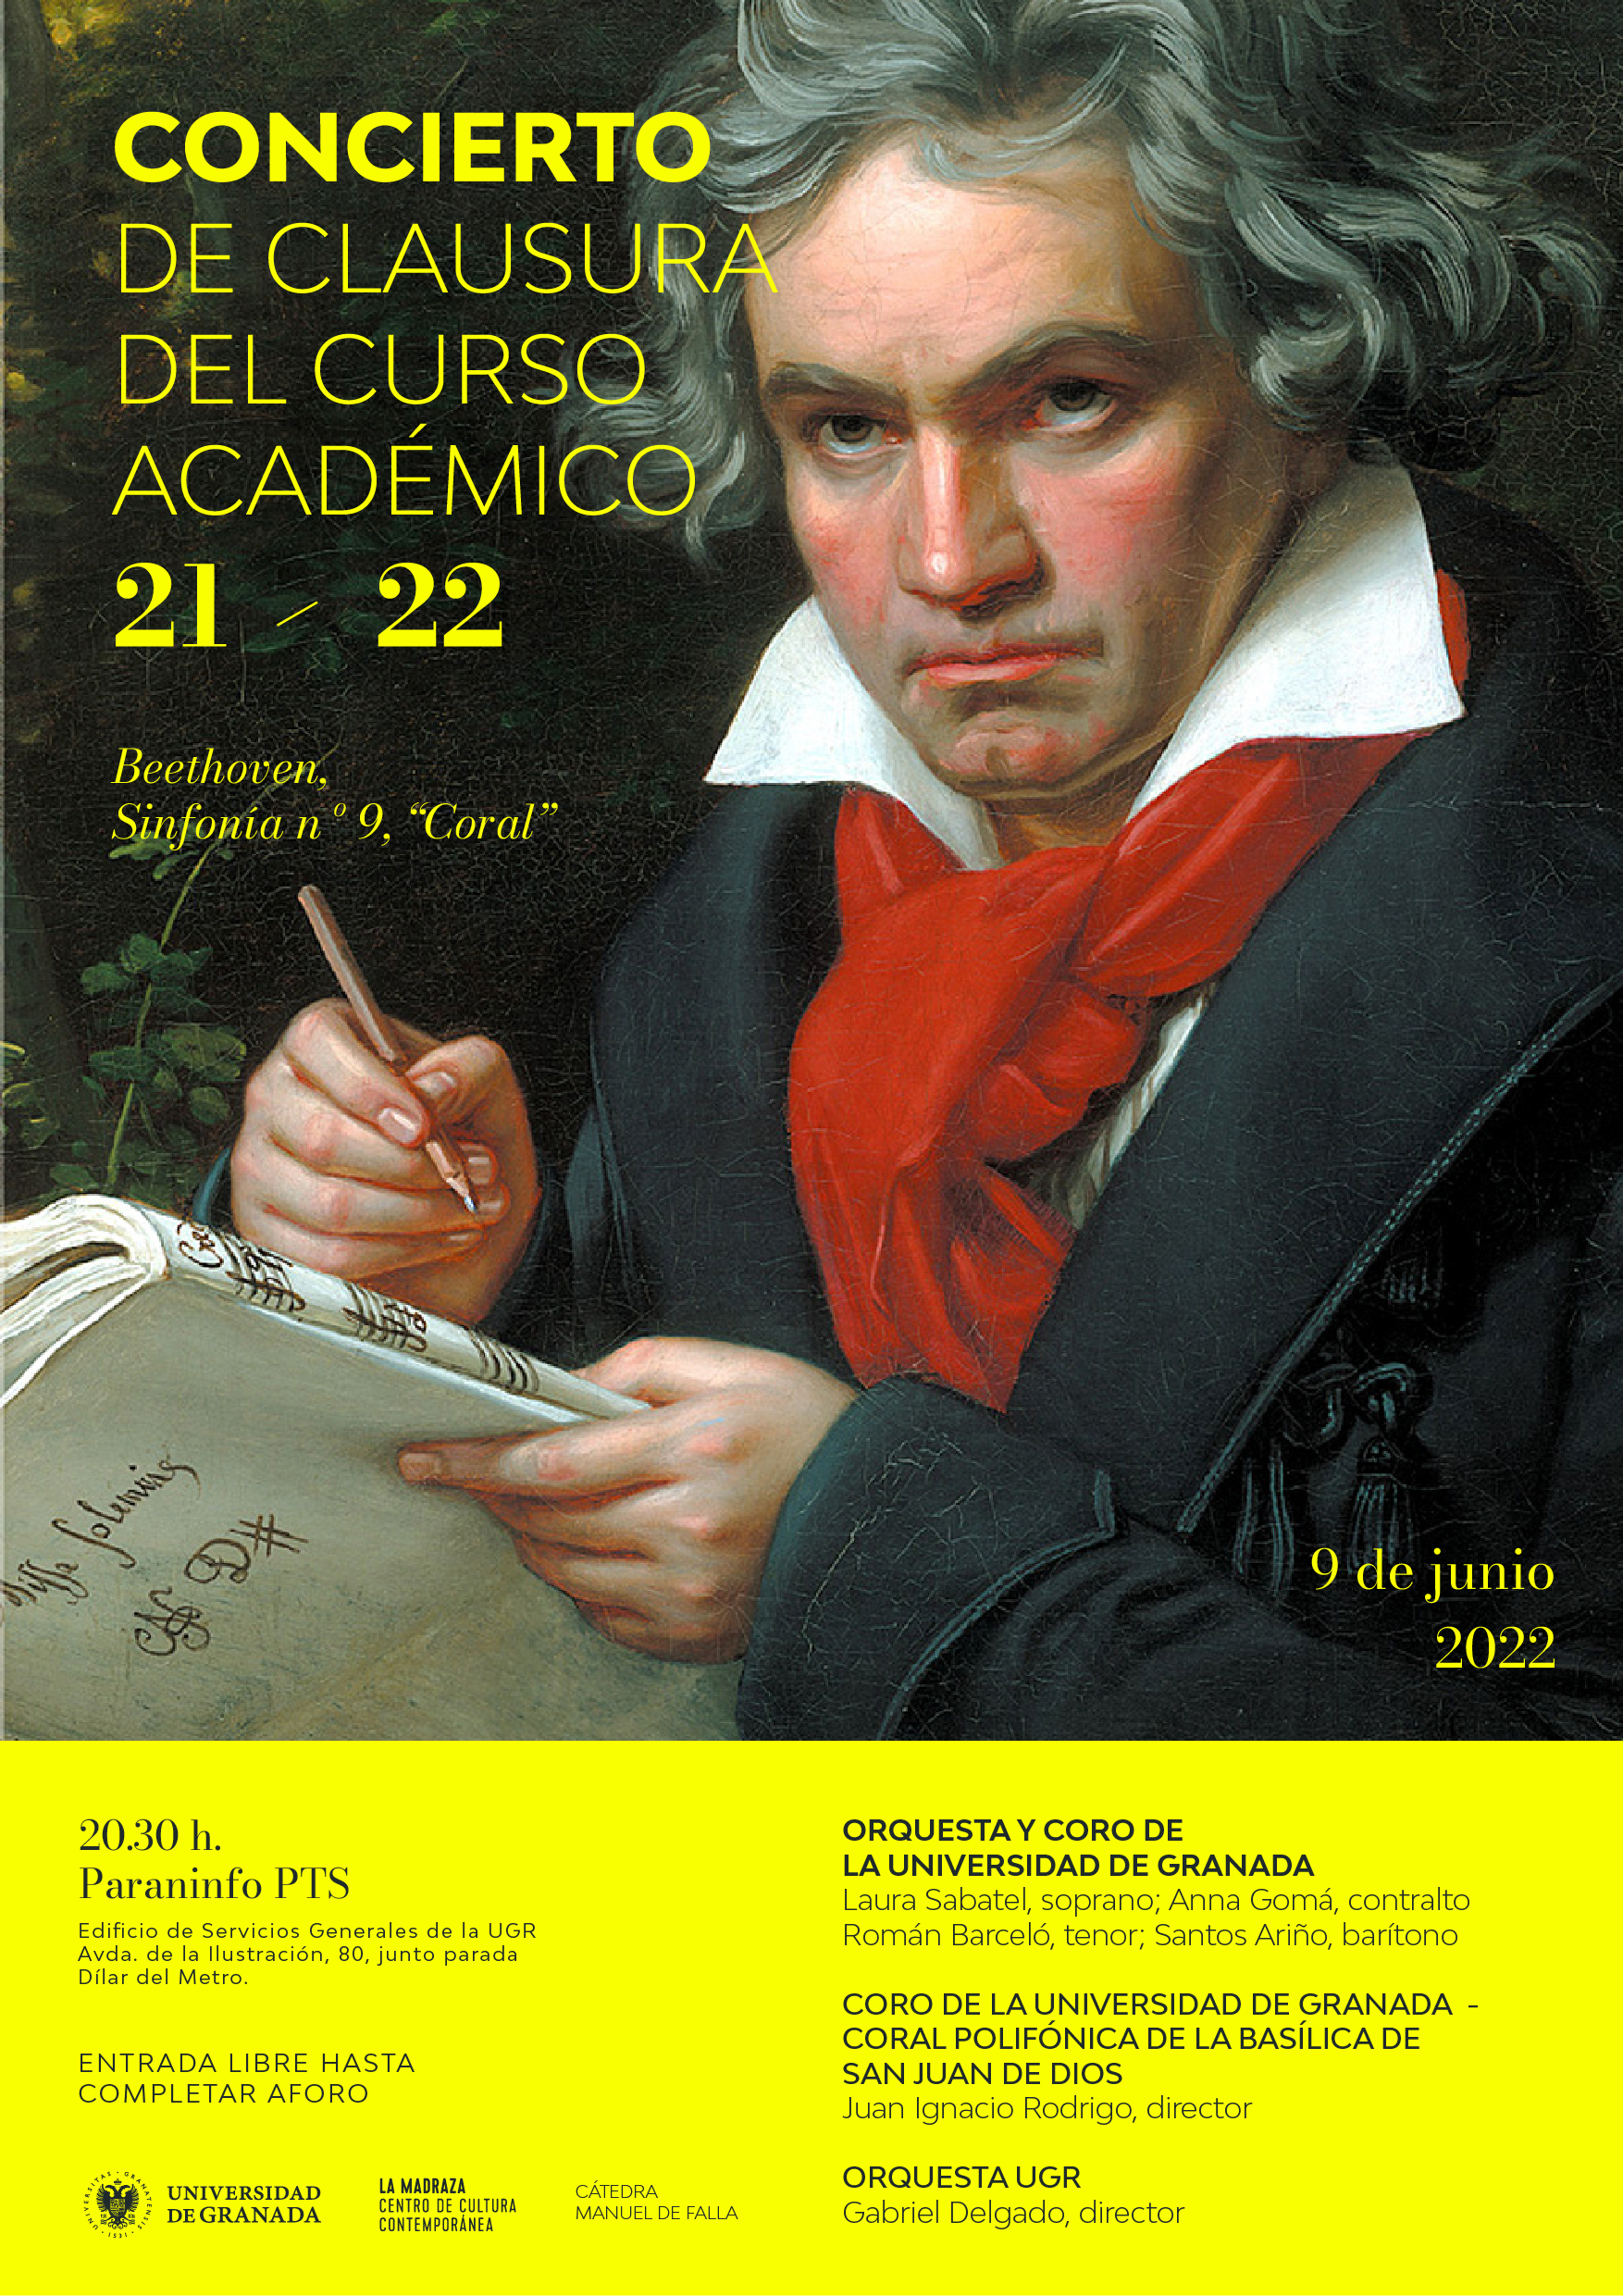 Concierto de clausura del curso académico 2021/2022. Retrato de Beethoven